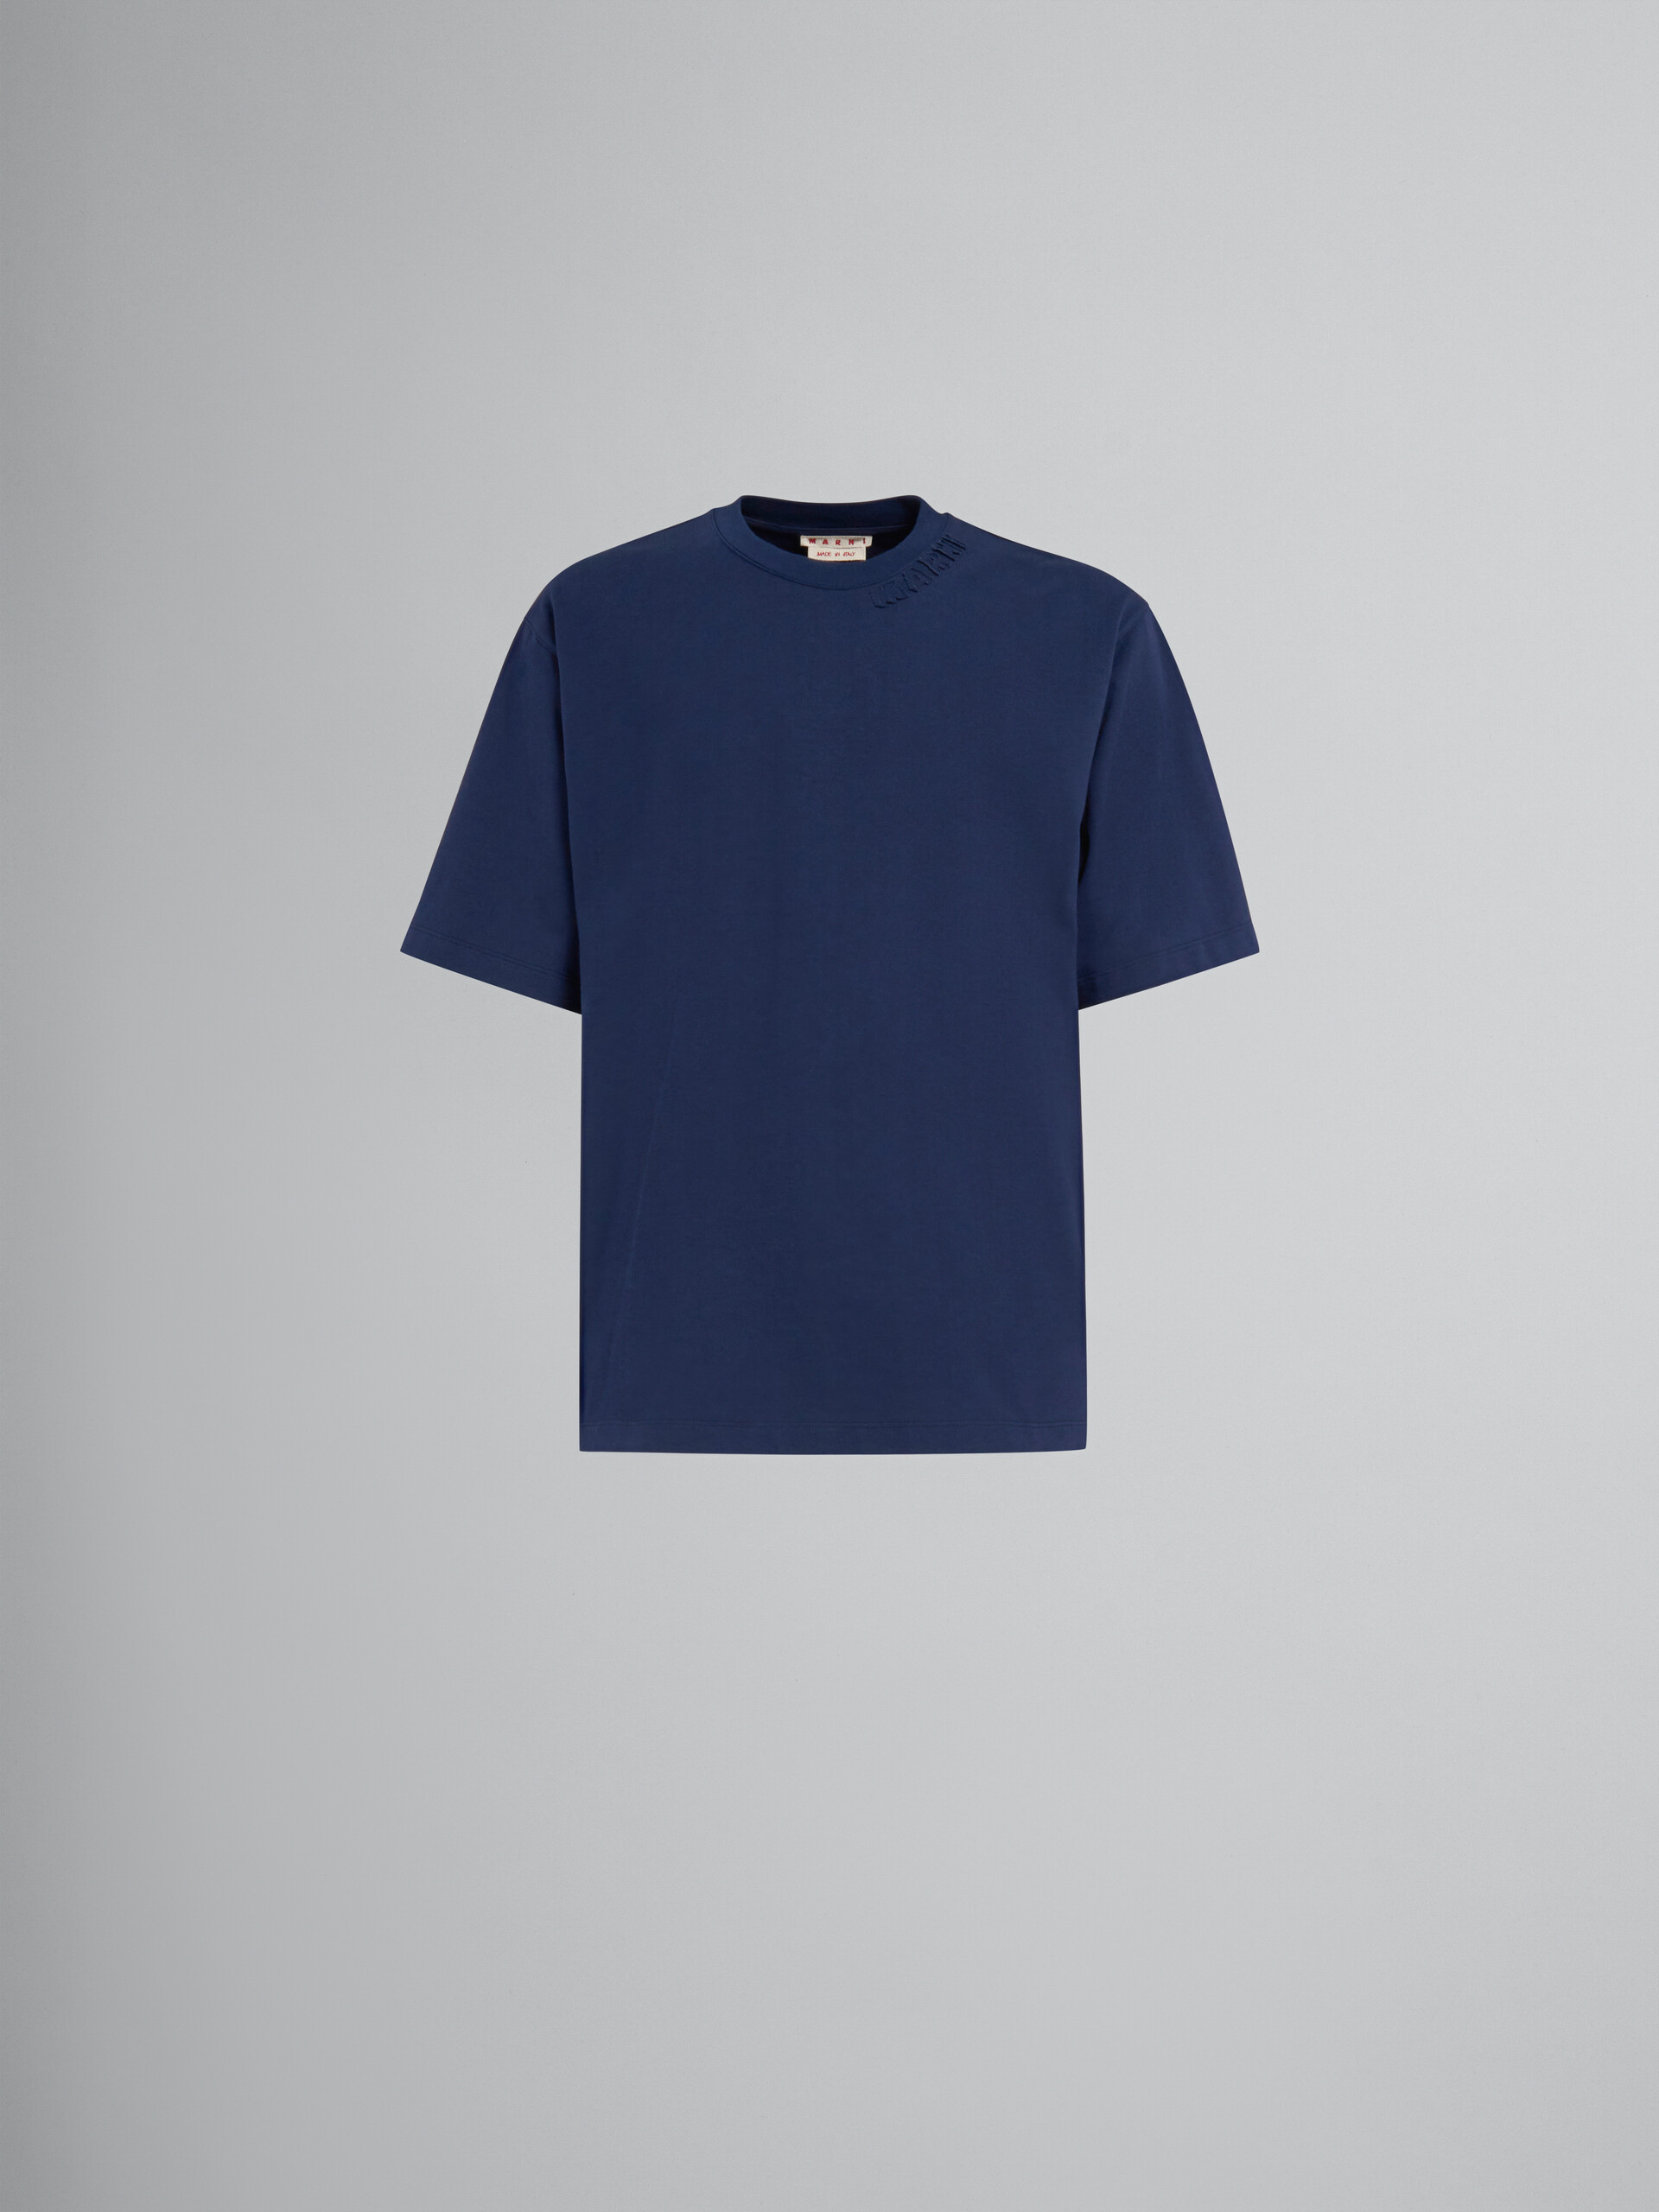 ブルー マルニパッチ付き オーガニックコットン製オーバーサイズTシャツ - Tシャツ - Image 1